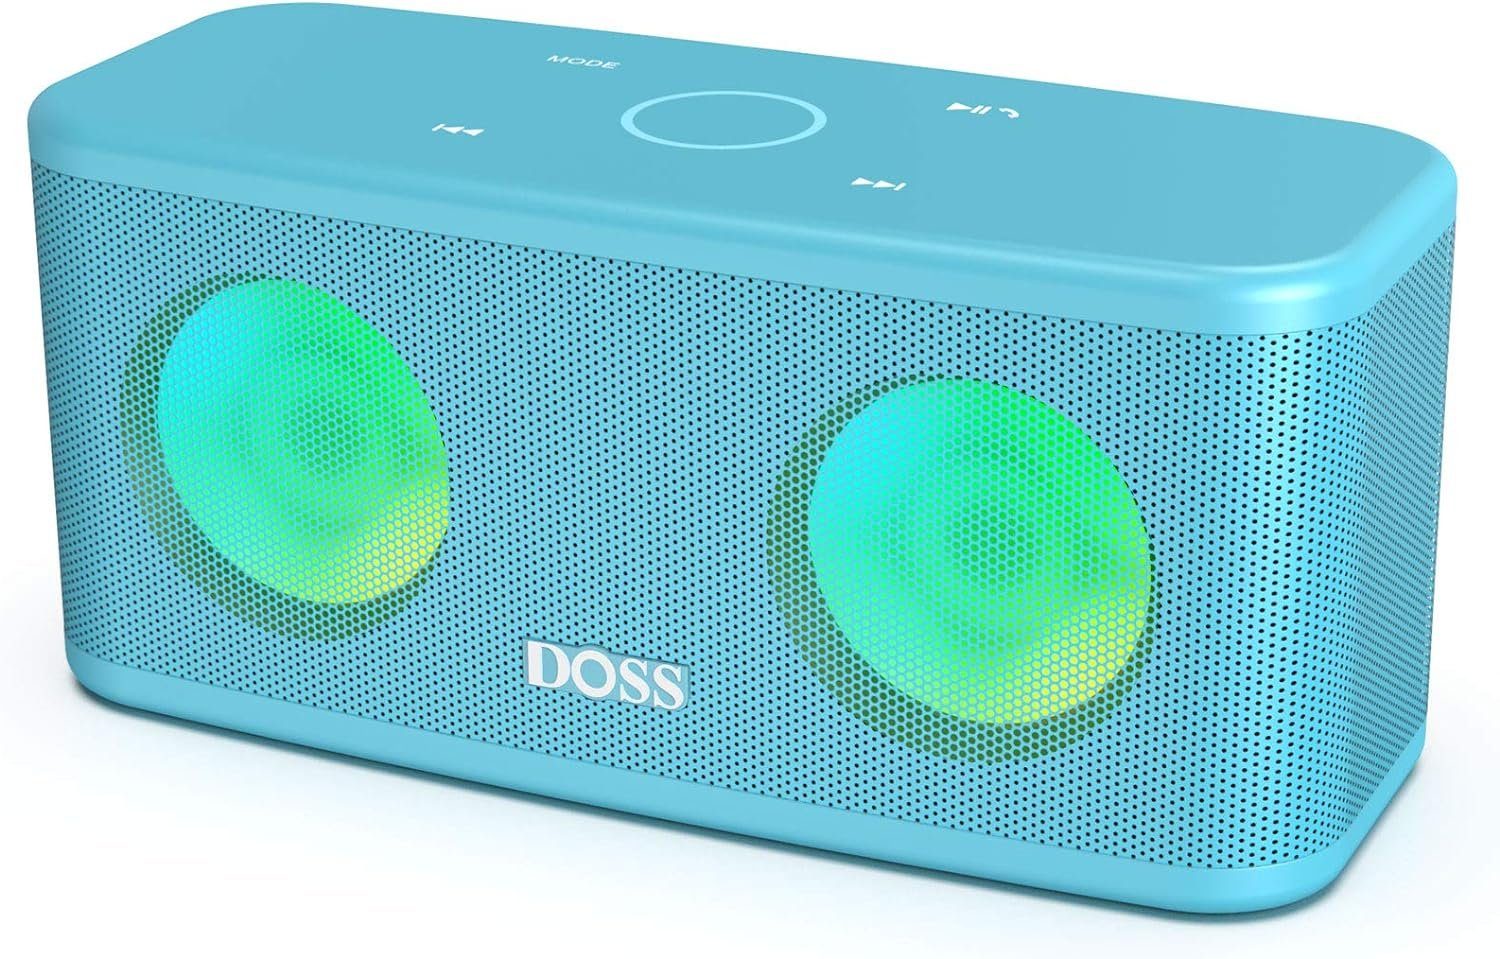 Wasserdicht) Lautsprecher Stereo 20h Wireless Touch-Steuerung, DOSS (Bluetooth, 16 IPX5 Akku Dual-Bass W, Lichter, Musikbox